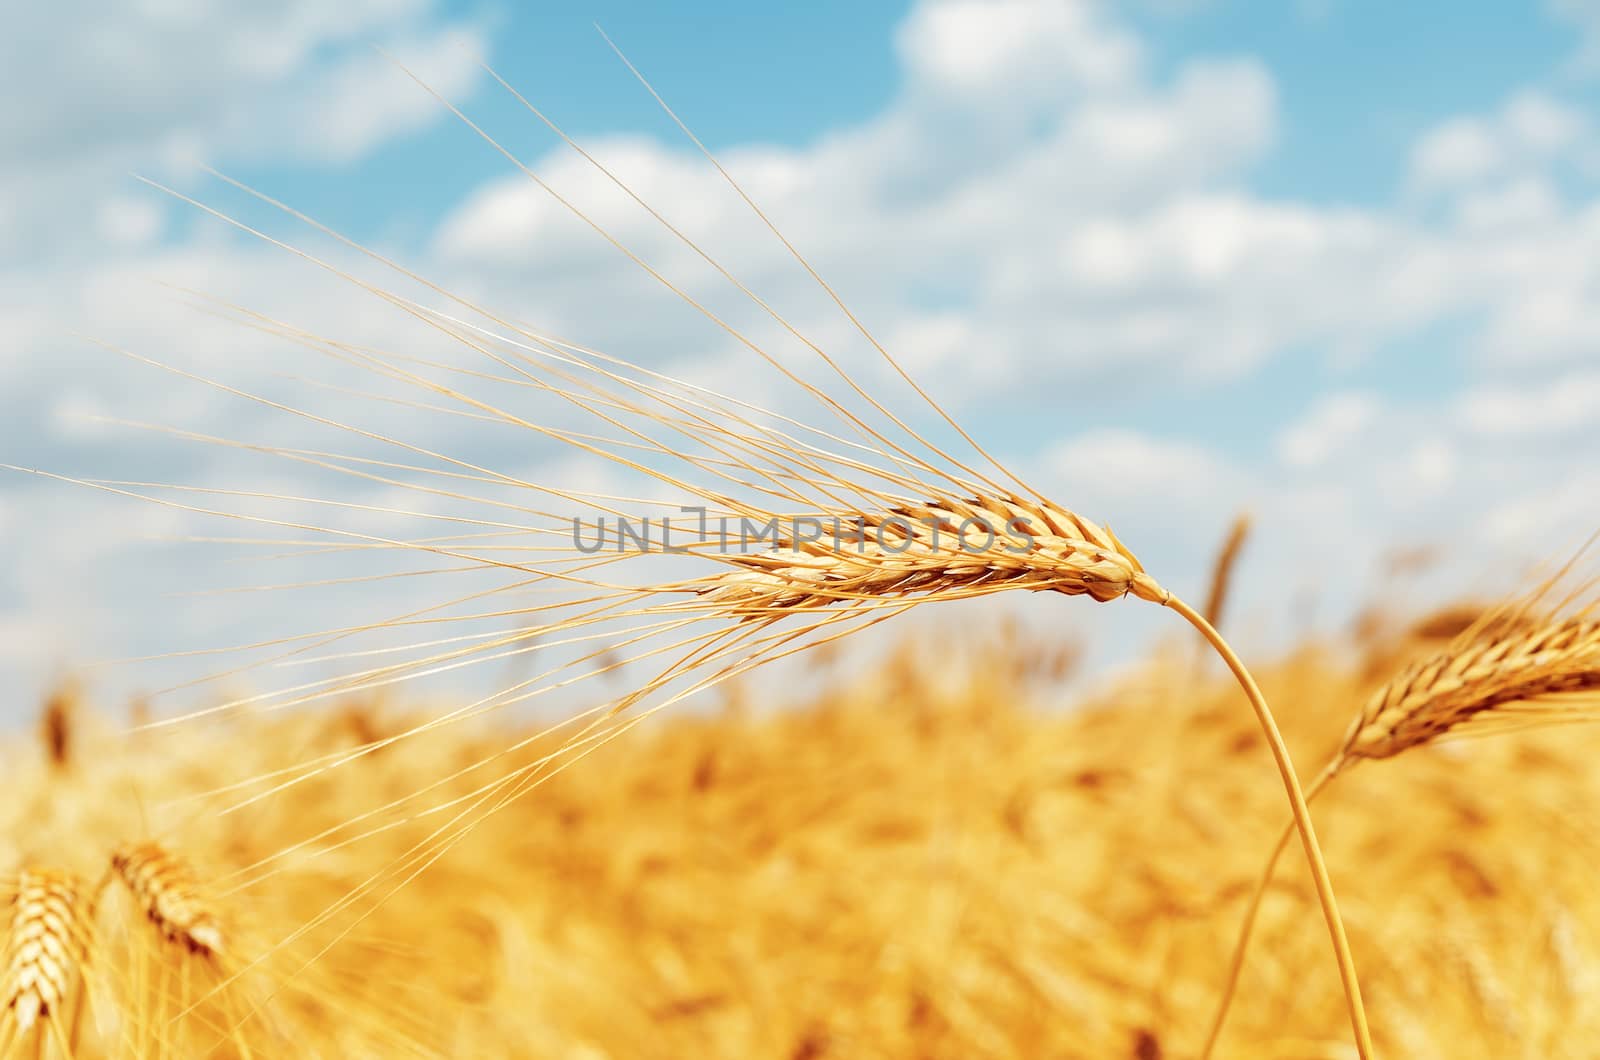 ripe ear of wheat on field by mycola